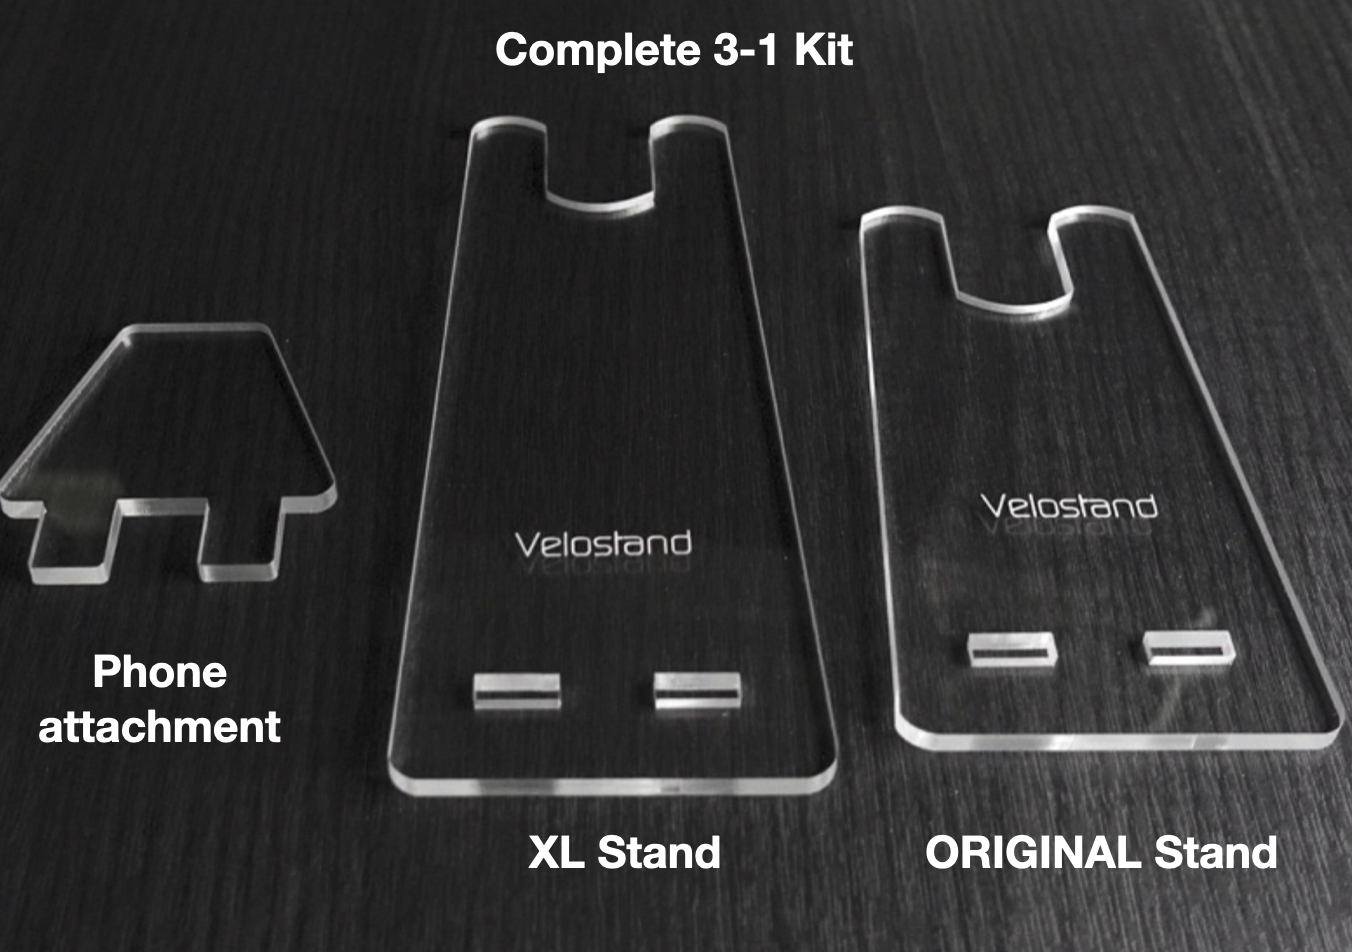 Velostand ORIGINAL + XL + PHONE attachment (3-in-1 BUNDLE)